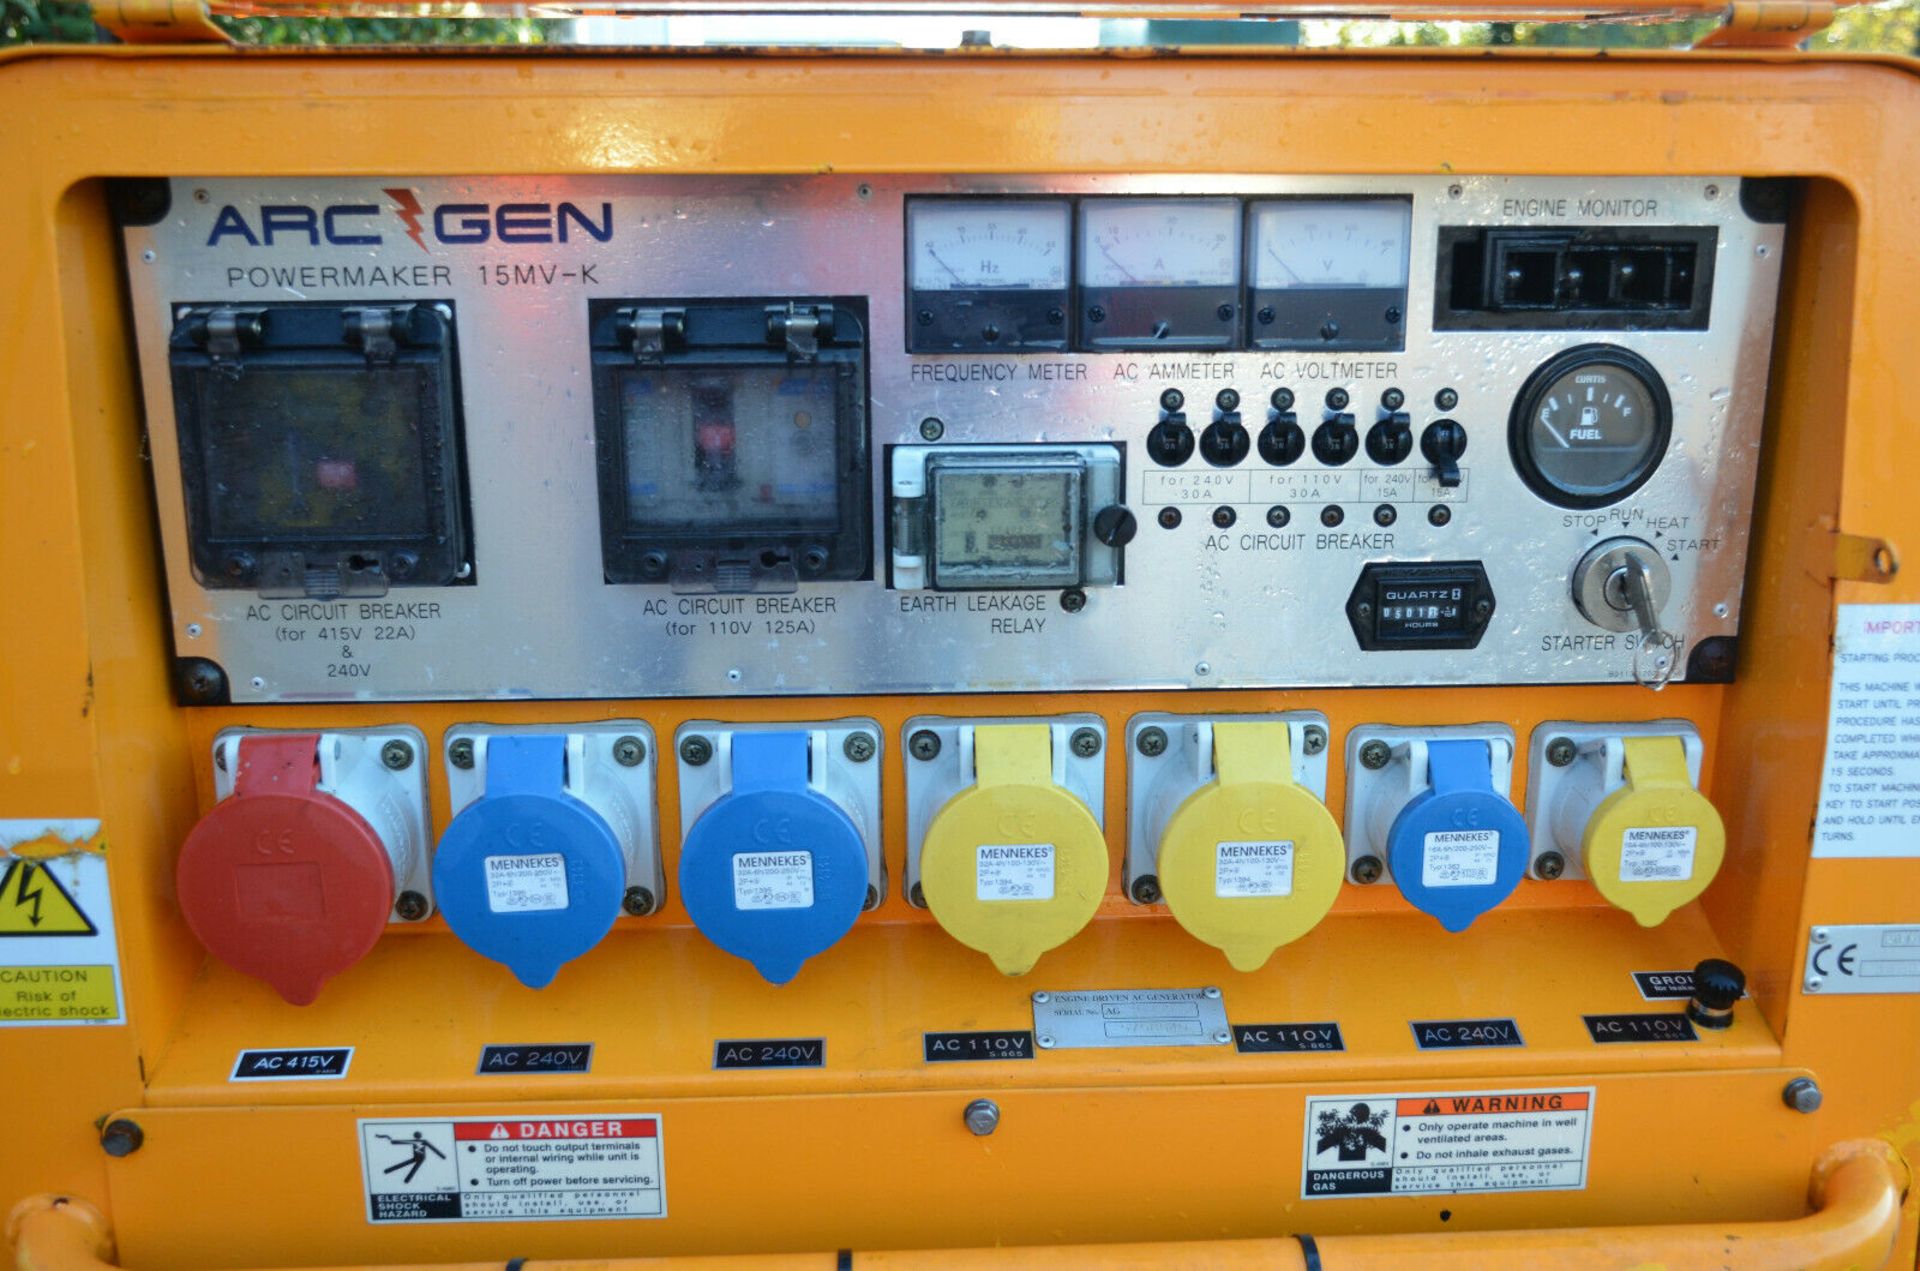 Arc Gen Powermaker 15MV-K Generator - Image 5 of 11